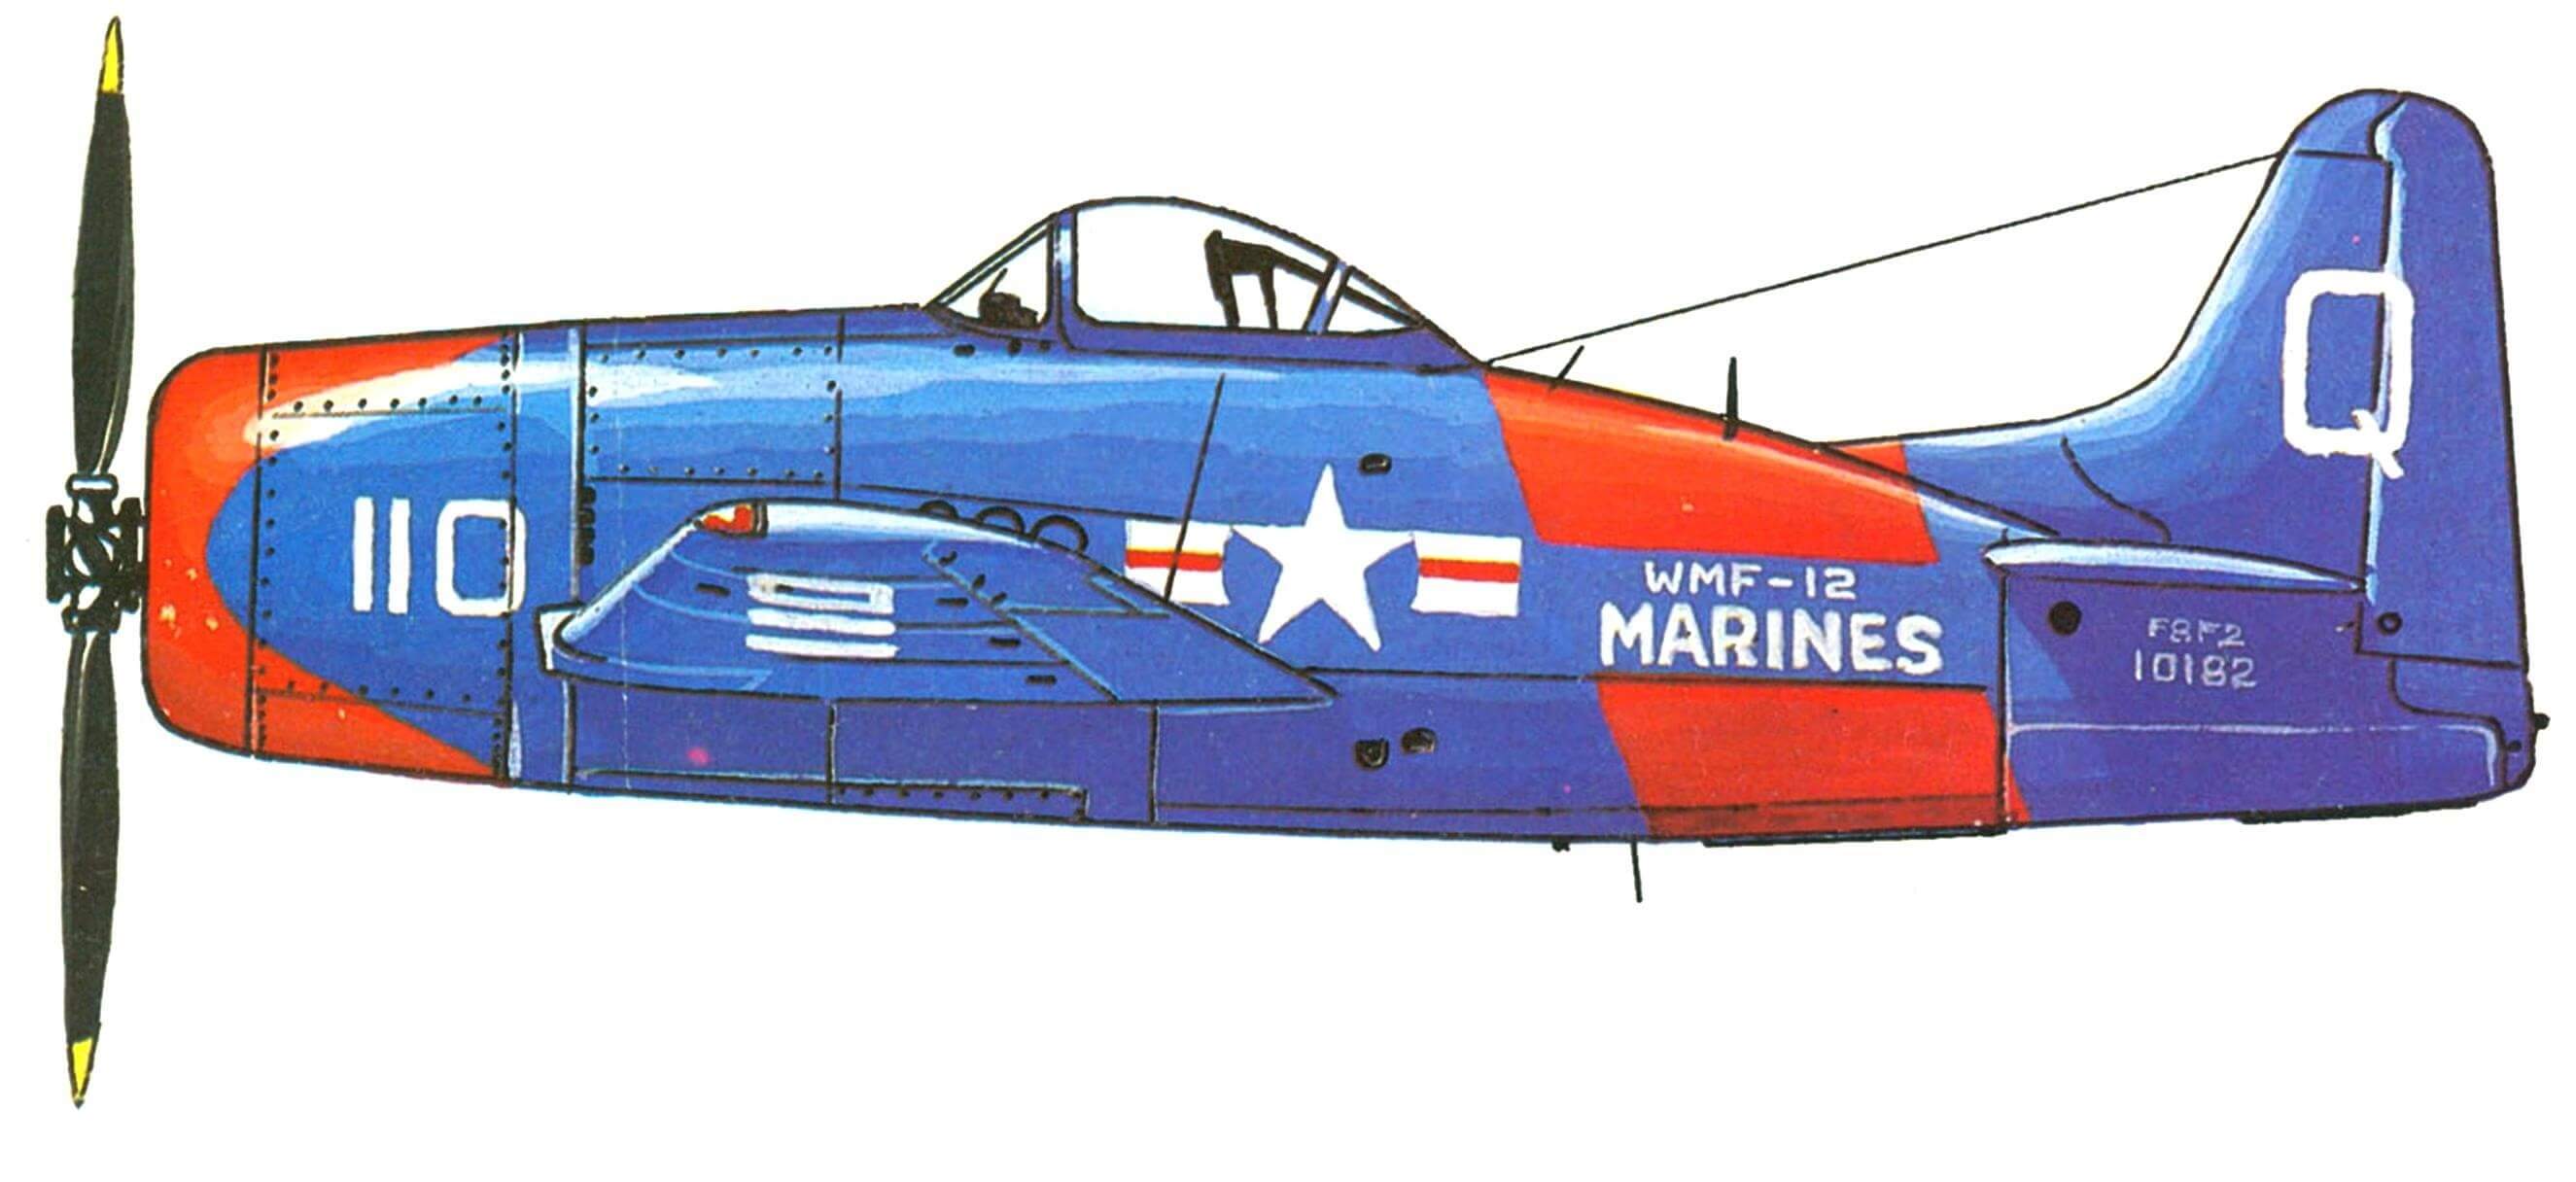 F8F-2 12-й истребительной эскадрильи морской пехоты США.